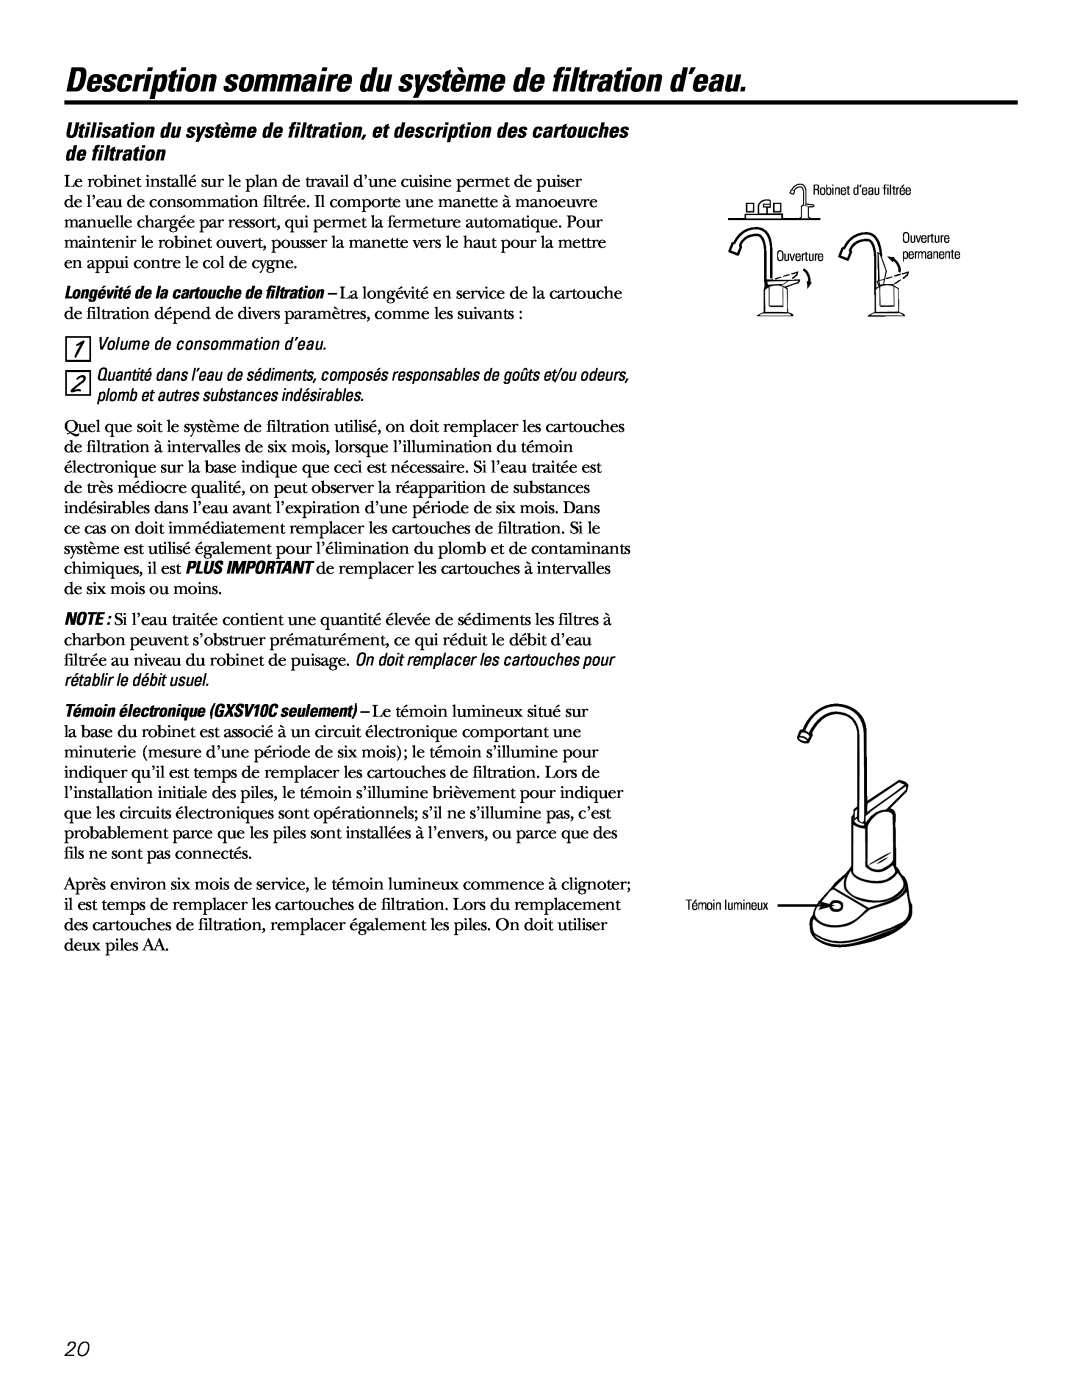 GE GXSL03C, GXSV10C Description sommaire du système de filtration d’eau, Volume de consommation d’eau 